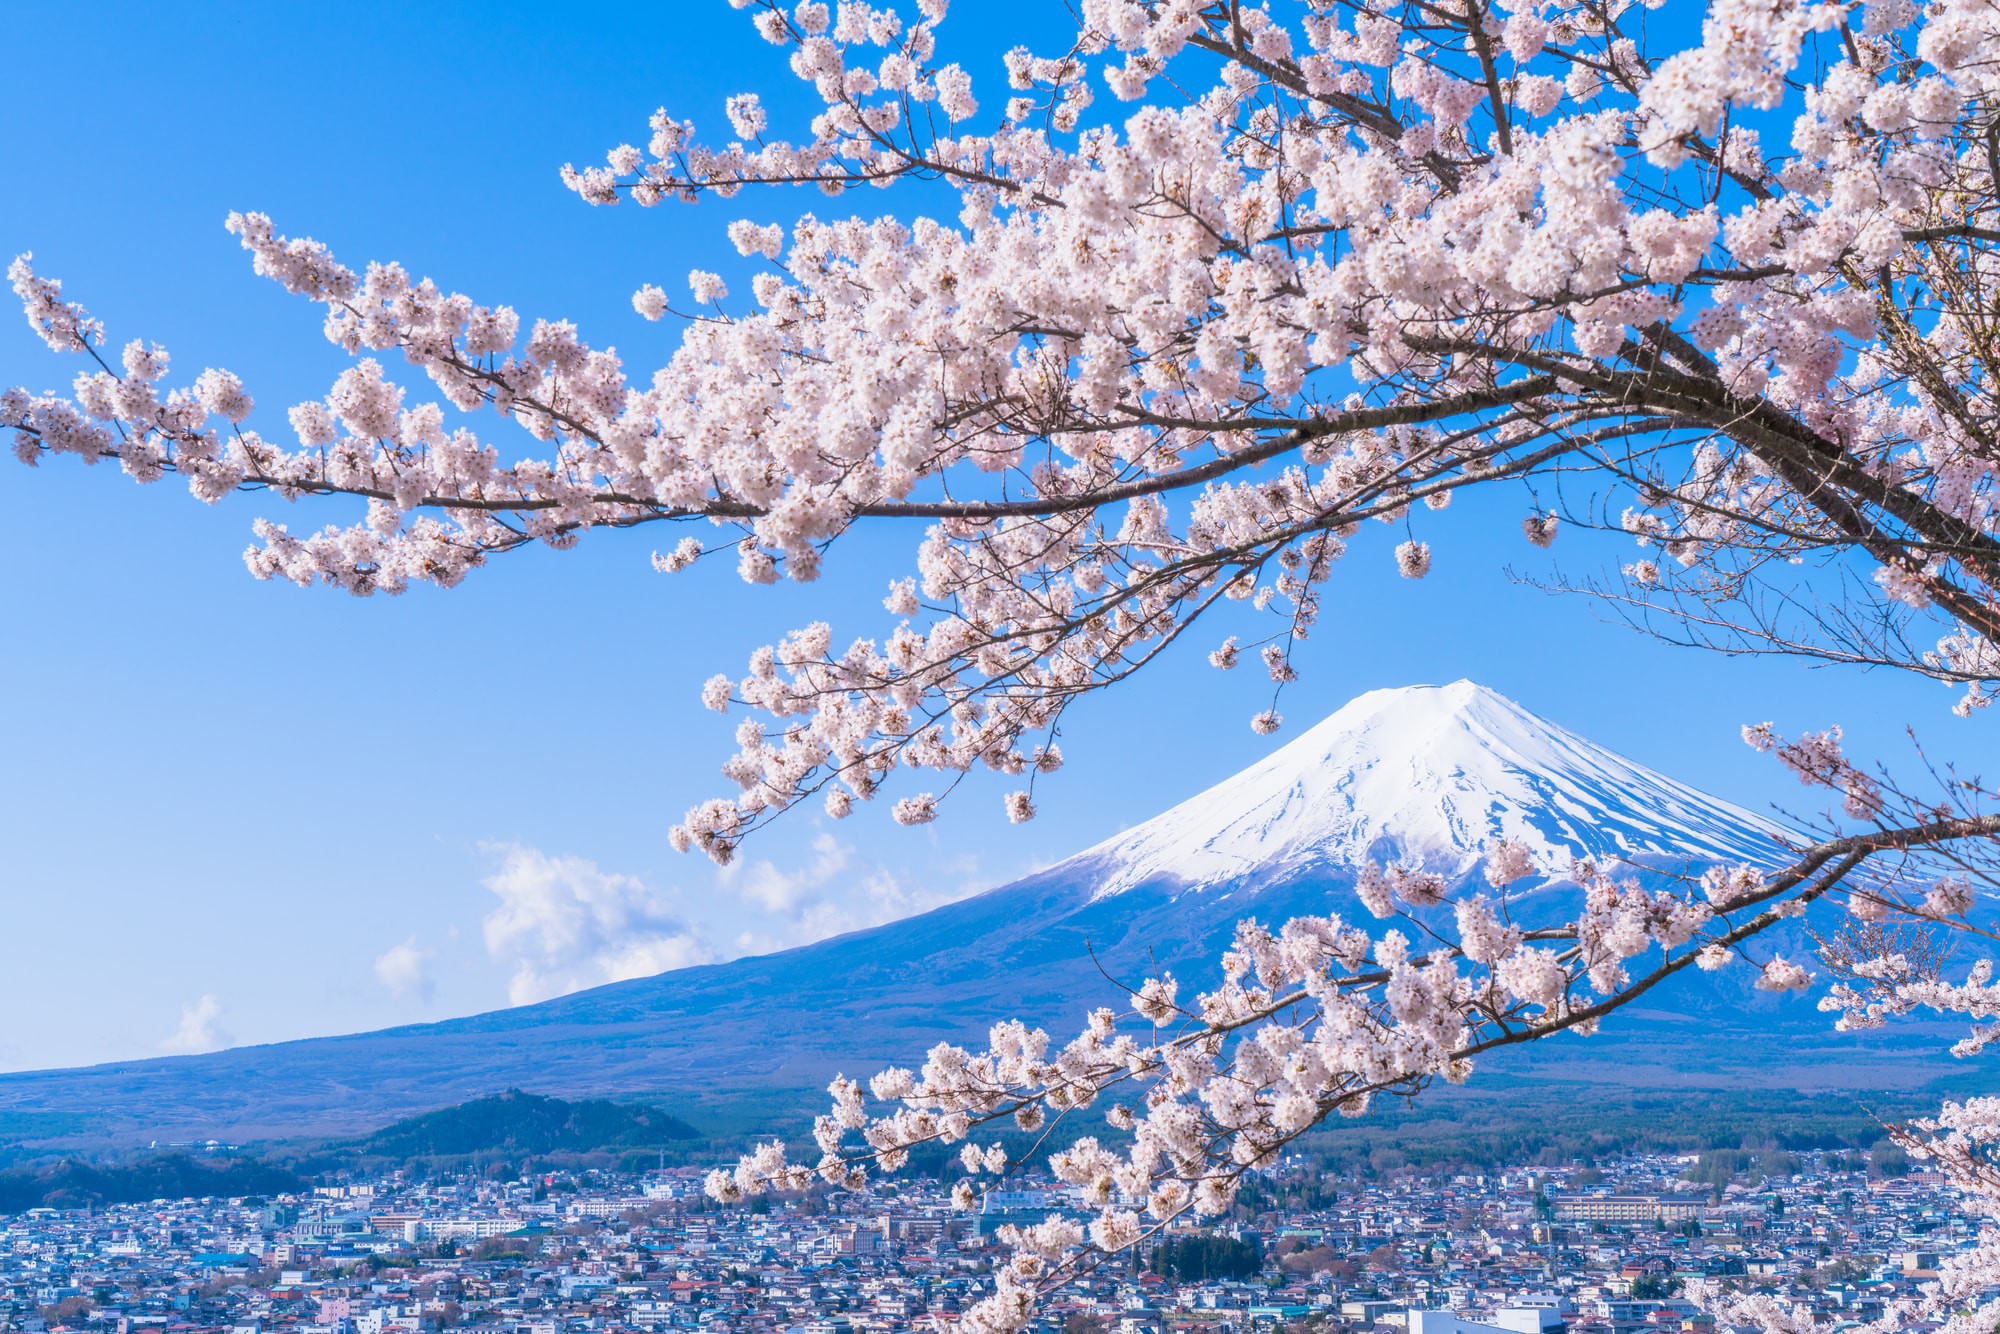 Hãy khám phá sự thơ mộng của những cánh hoa anh đào Nhật Bản, khi nó đua nhau nở rộ trong những ngày đầu Xuân. Hình ảnh đắm say này sẽ mang đến cho bạn niềm vui và cảm giác tươi mới.